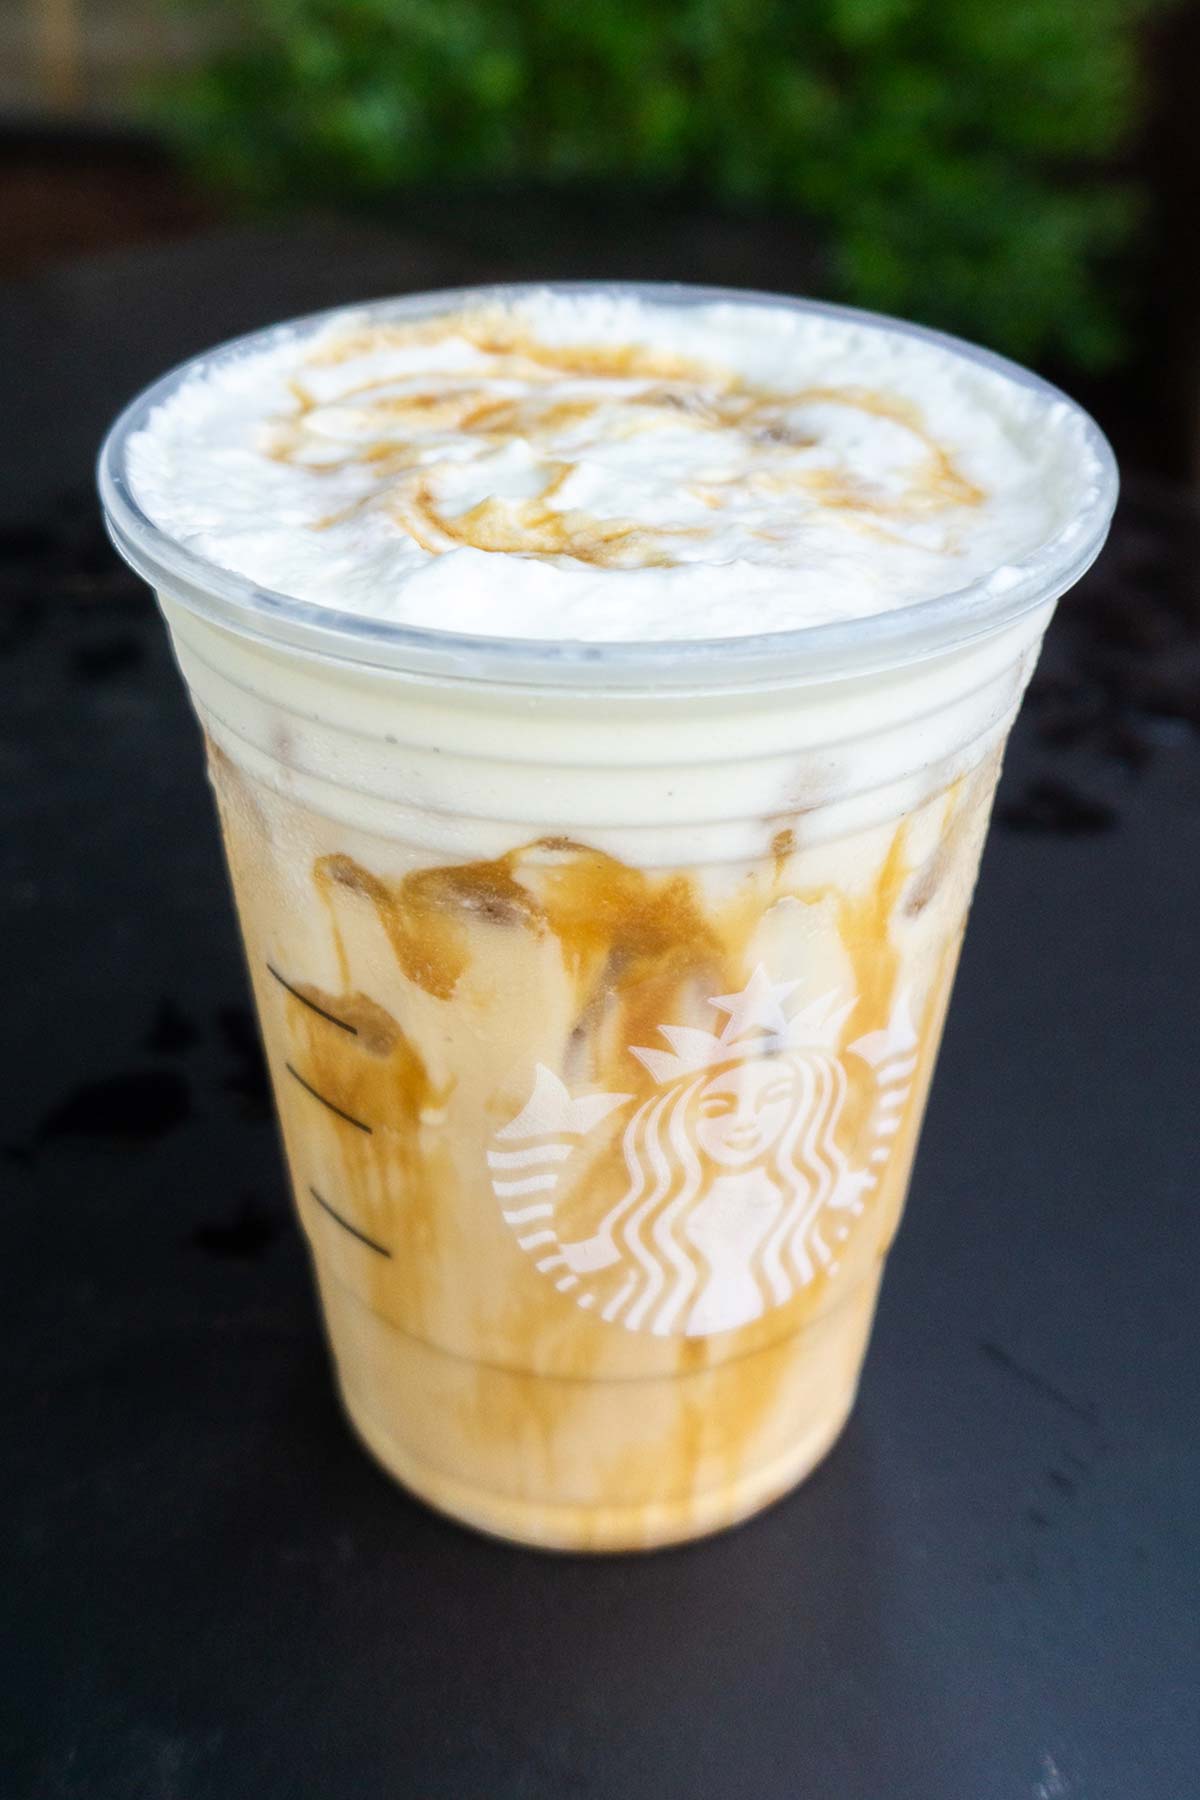 Starbucks Iced White Mocha met Sweet Cream Foam en extra caramel drizzle drankje.